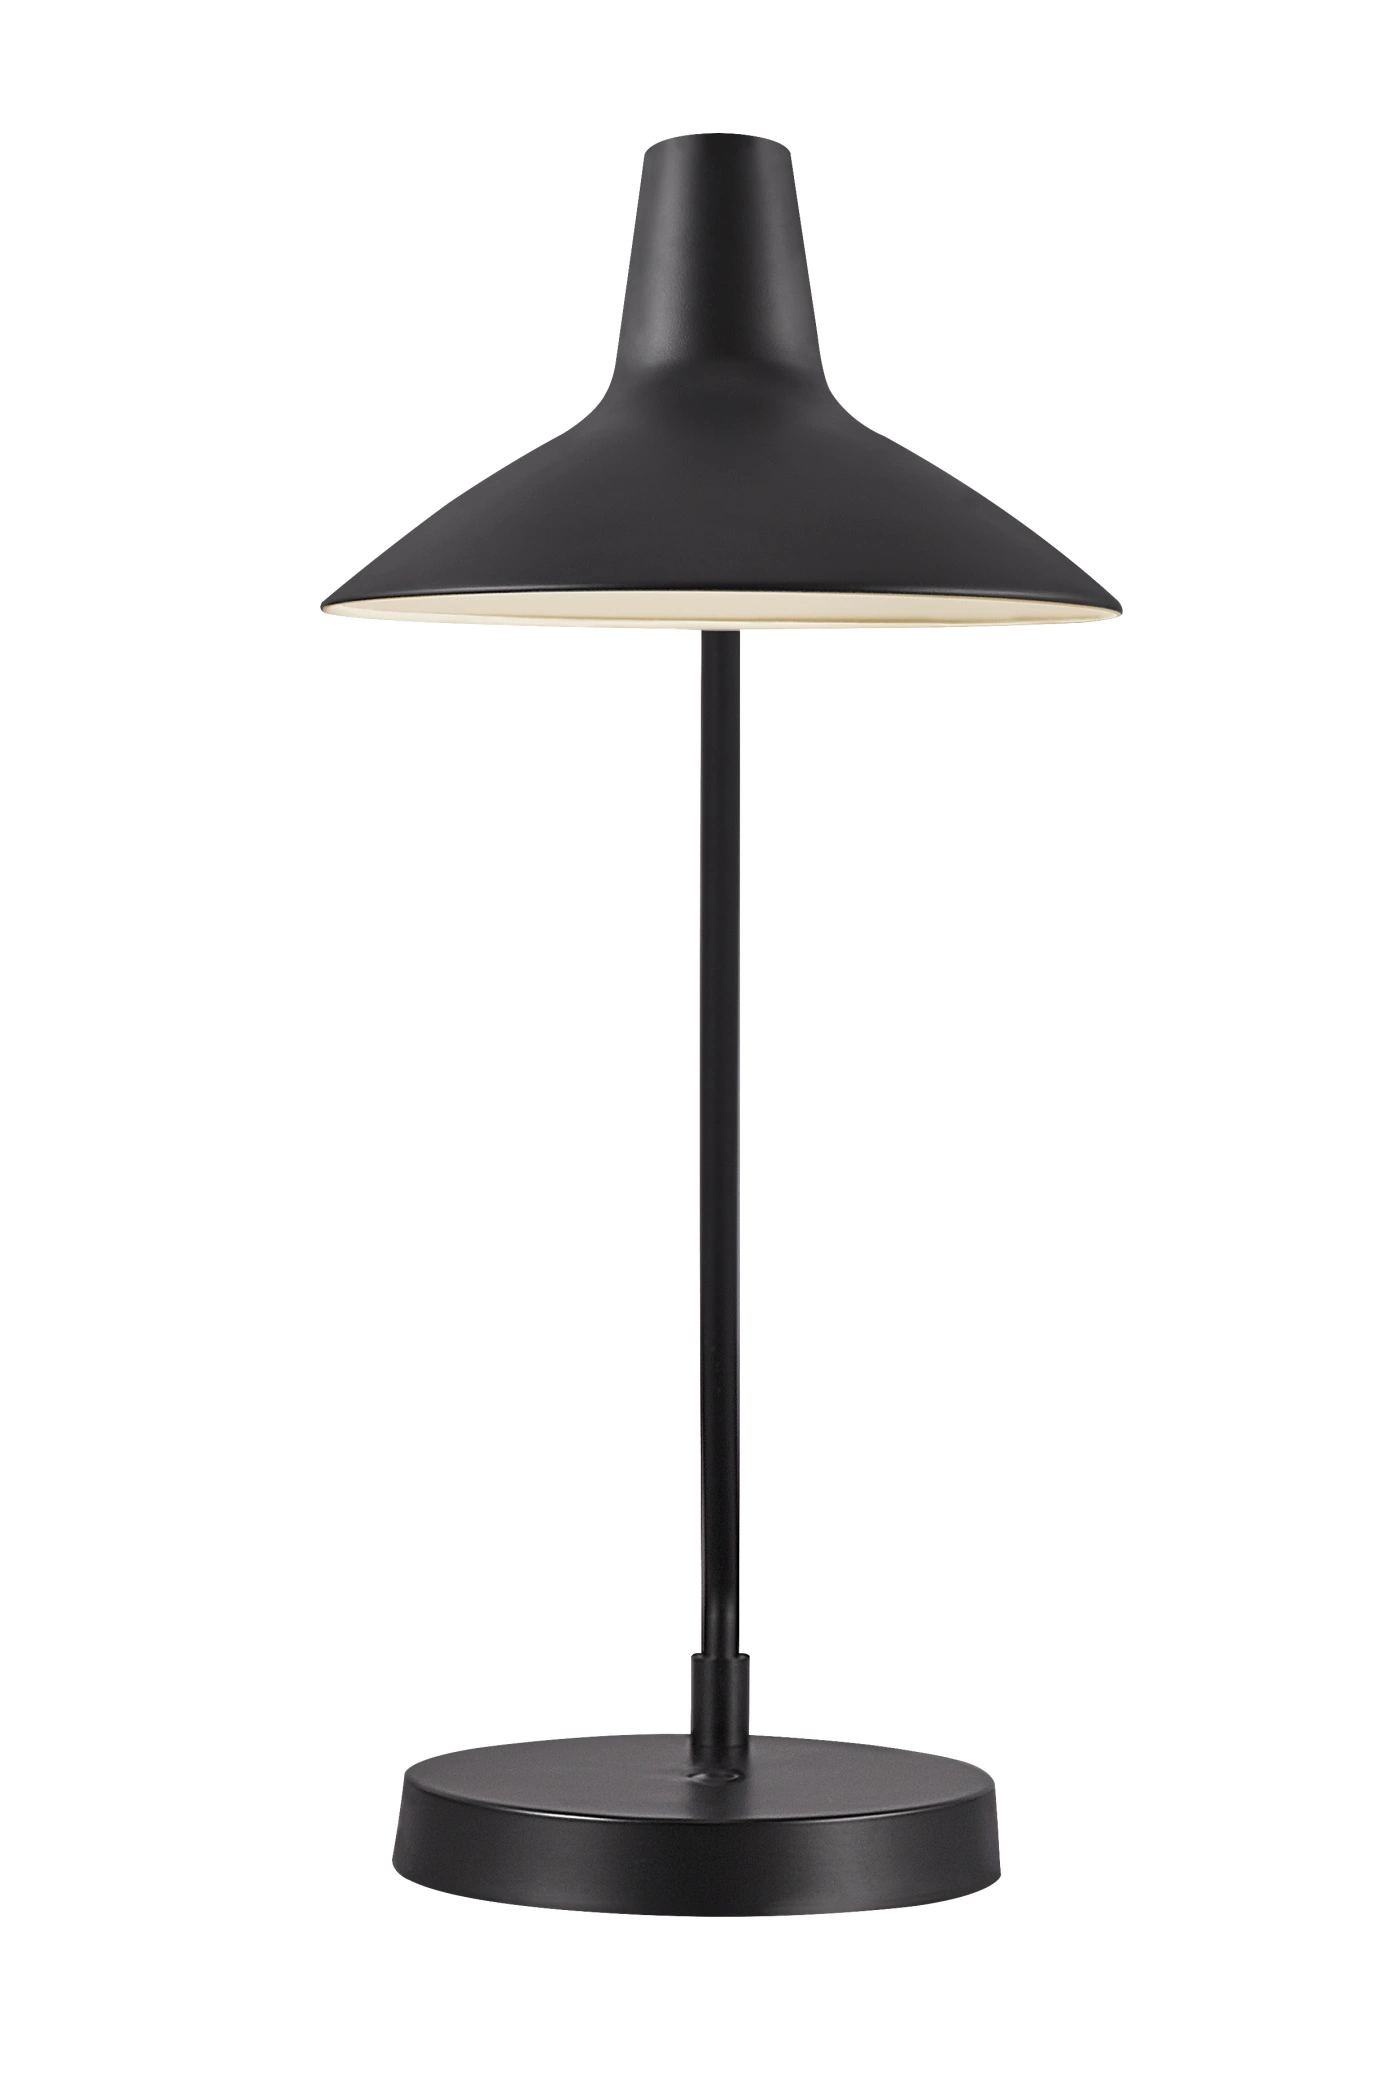   
                        Настільна лампа NORDLUX (Данія) 51926    
                         у стилі скандинавський, лофт.  
                        Тип джерела світла: cвітлодіодні led, енергозберігаючі, розжарювання.                                                 Кольори плафонів і підвісок: чорний, білий.                         Матеріал: метал.                          фото 3